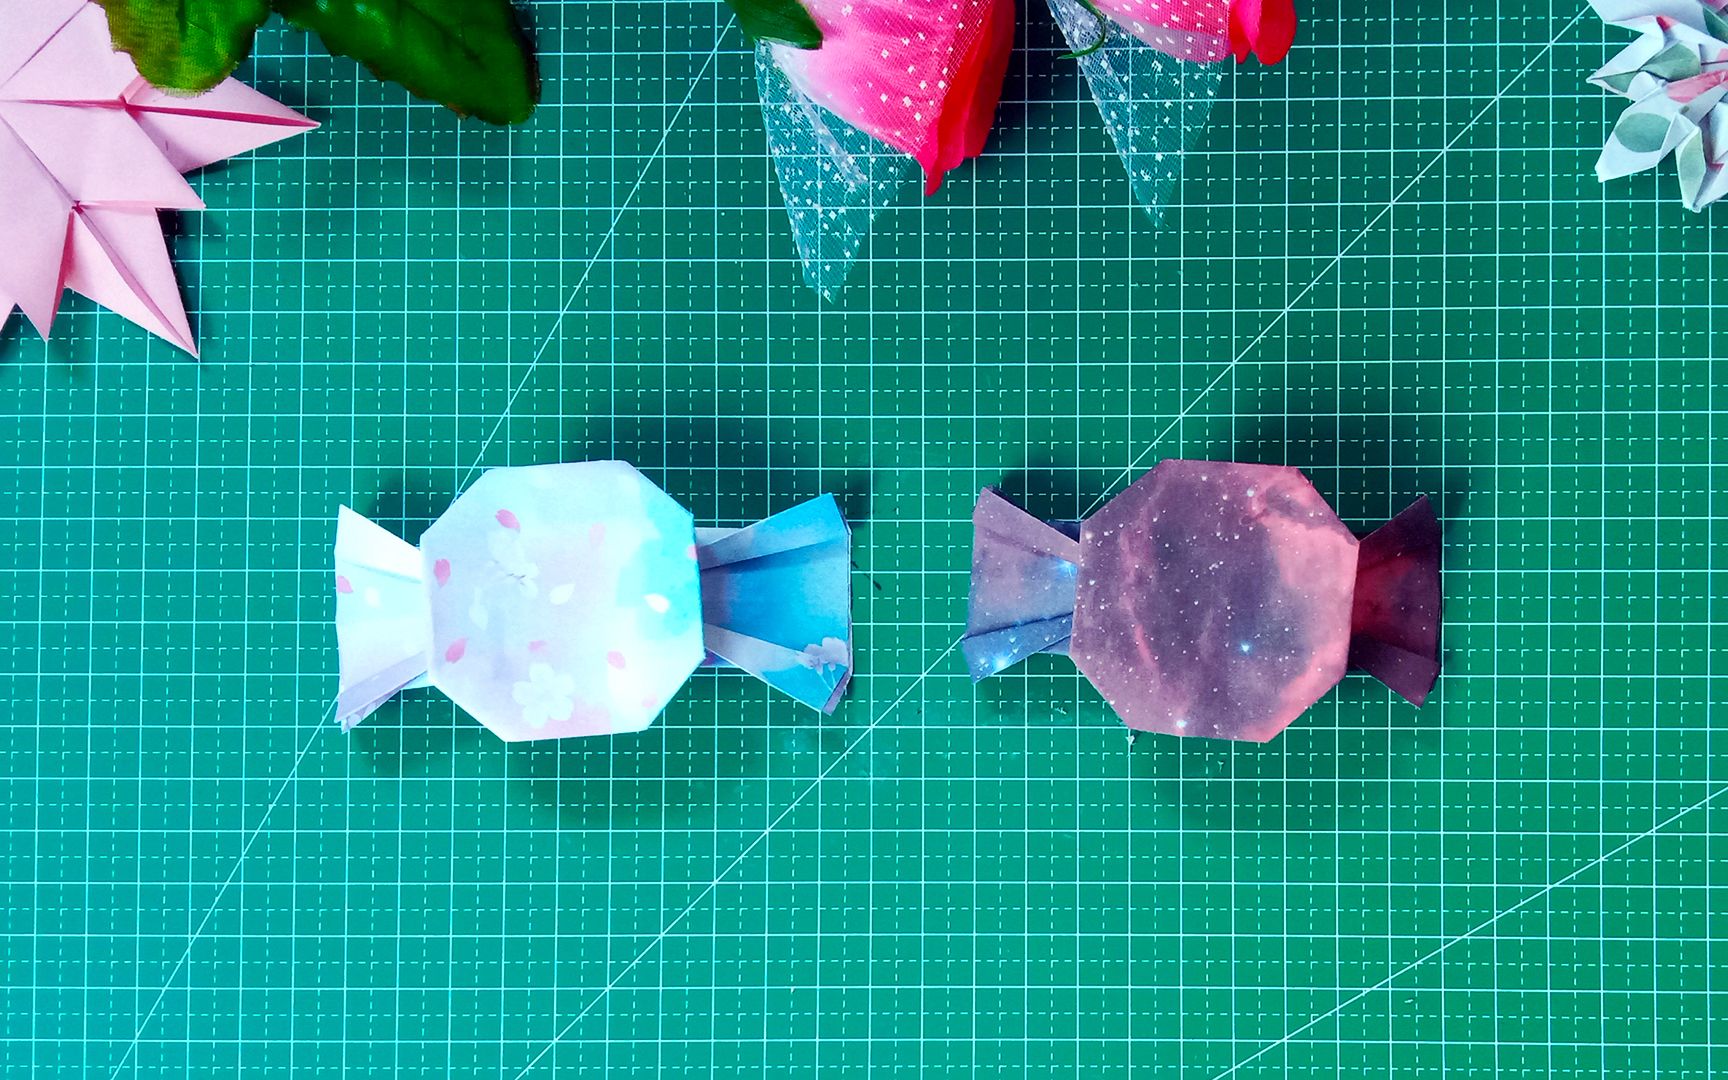 糖果的做法手工折纸-图库-五毛网